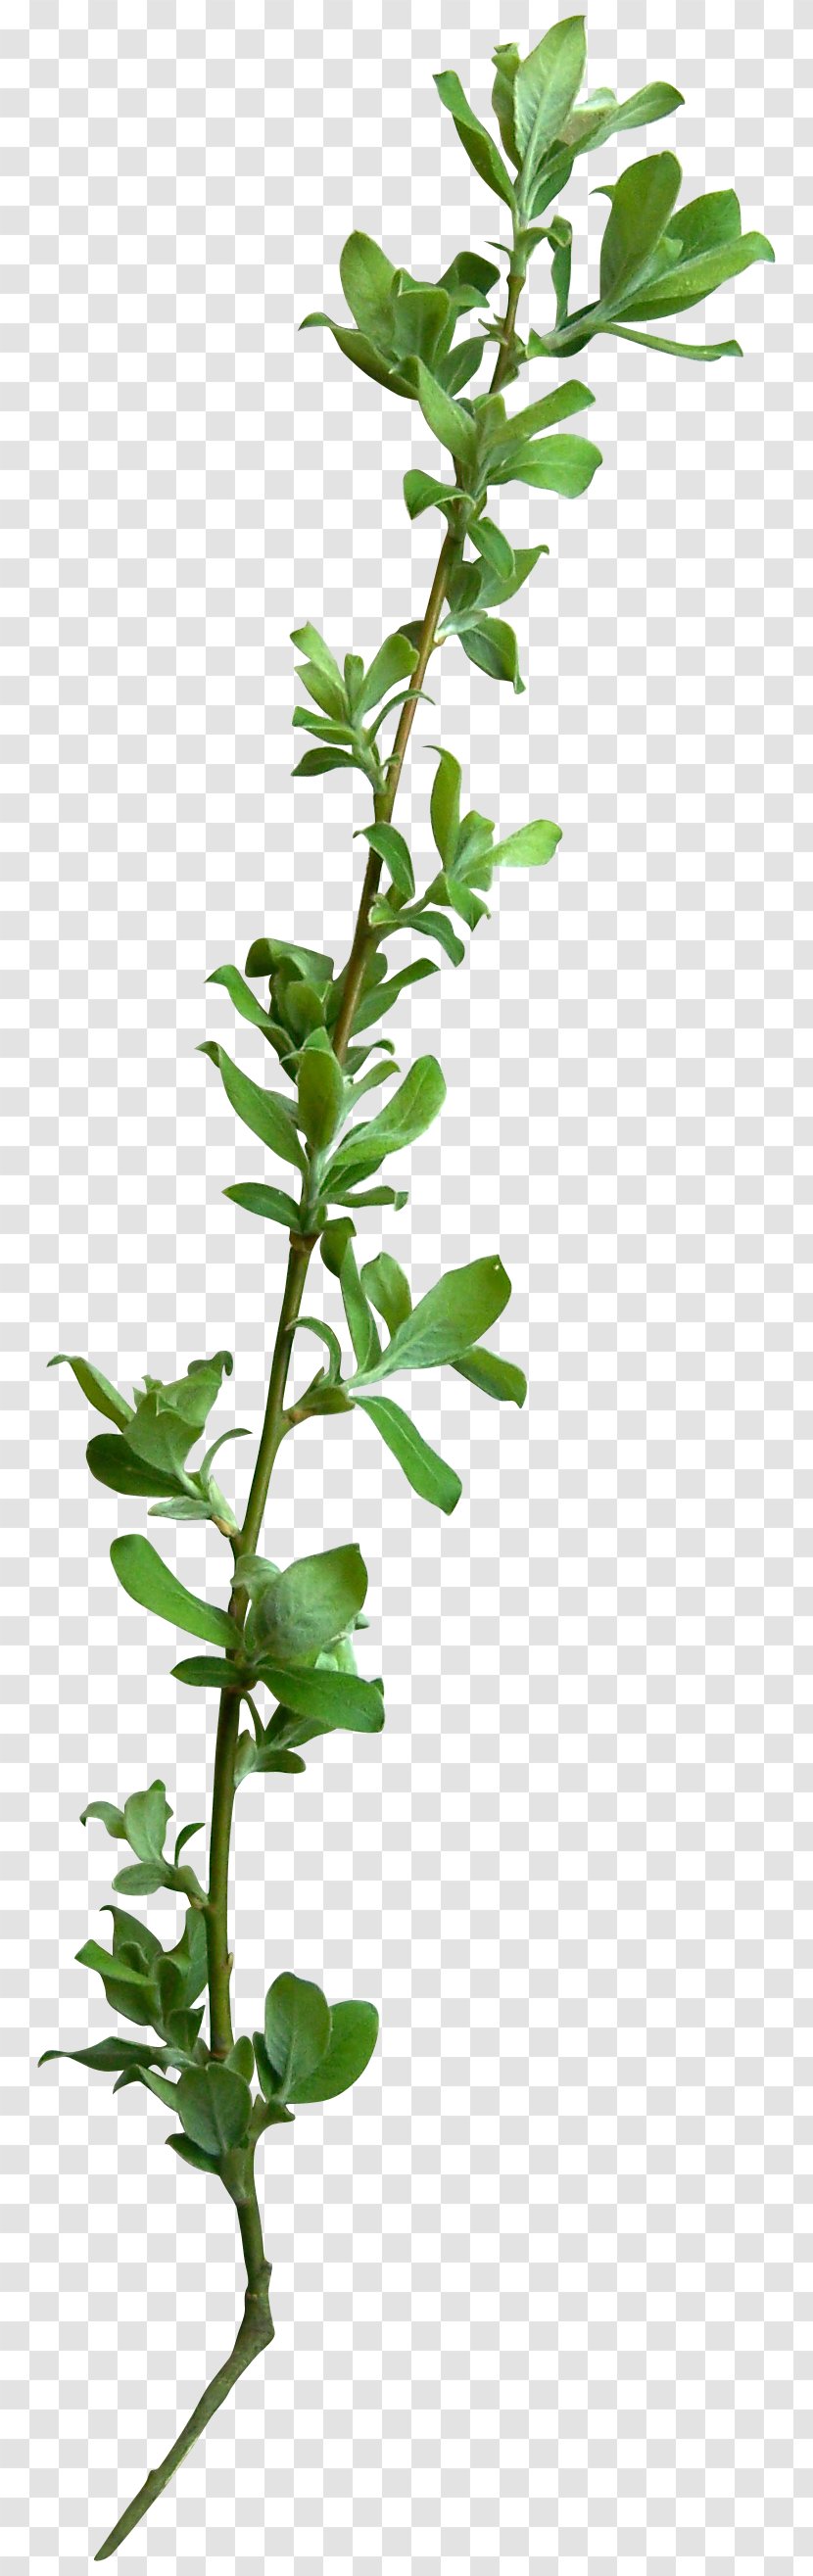 Tree Leaf Branch Vine - Herb - TWIG Transparent PNG